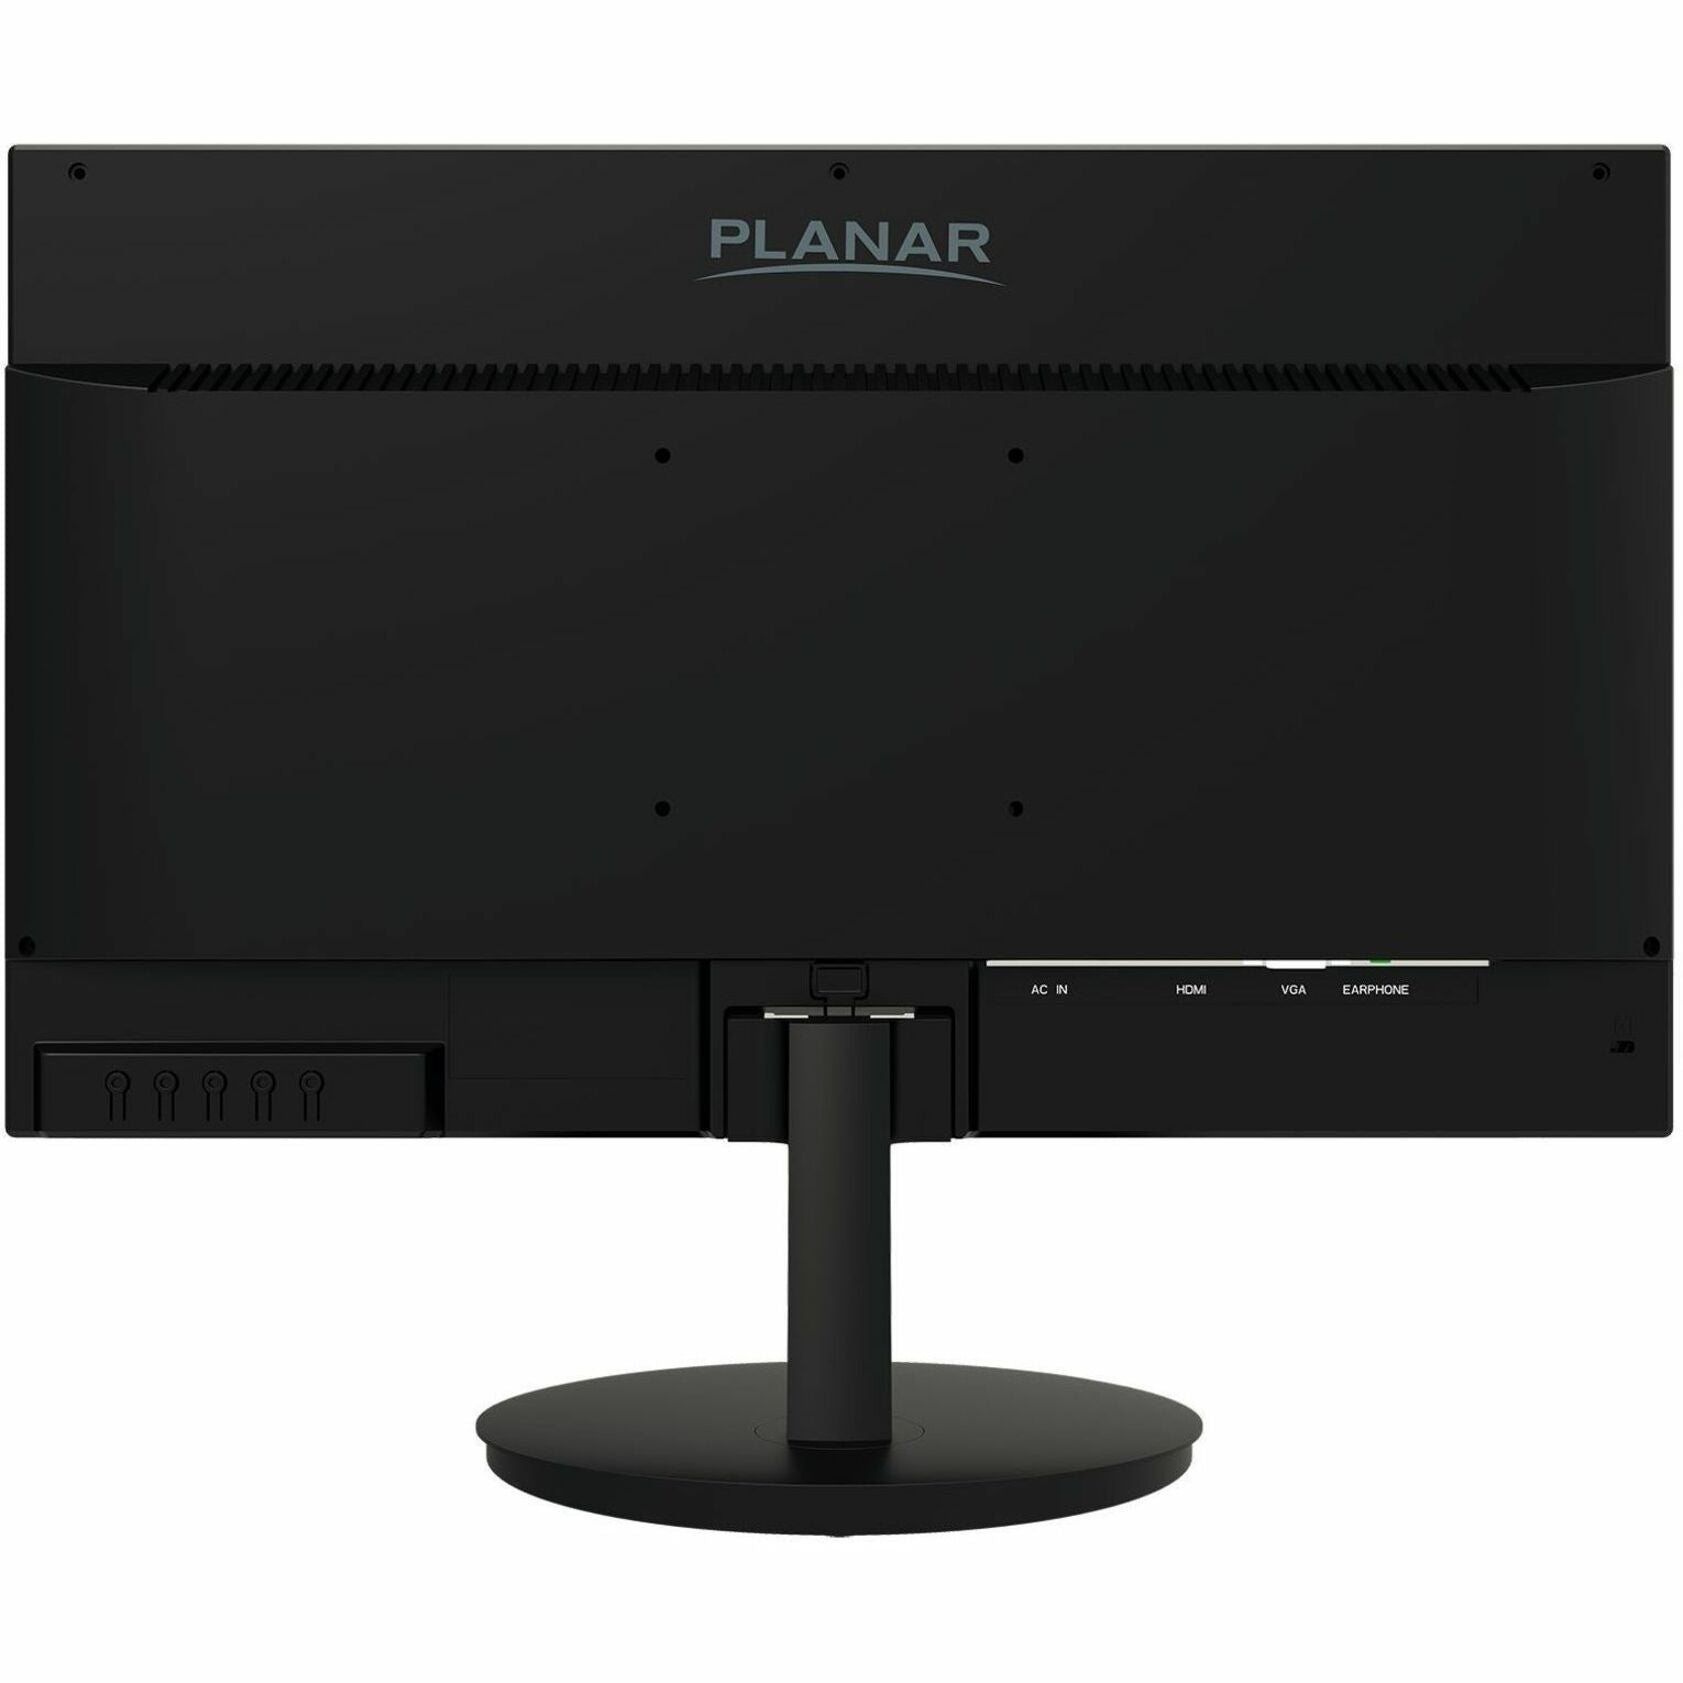 Planar 998-1329-01 PLN2200 Widescreen LED Monitor, Full HD, 21.5", 178° Viewing Angle, HDMI and VGA Ports